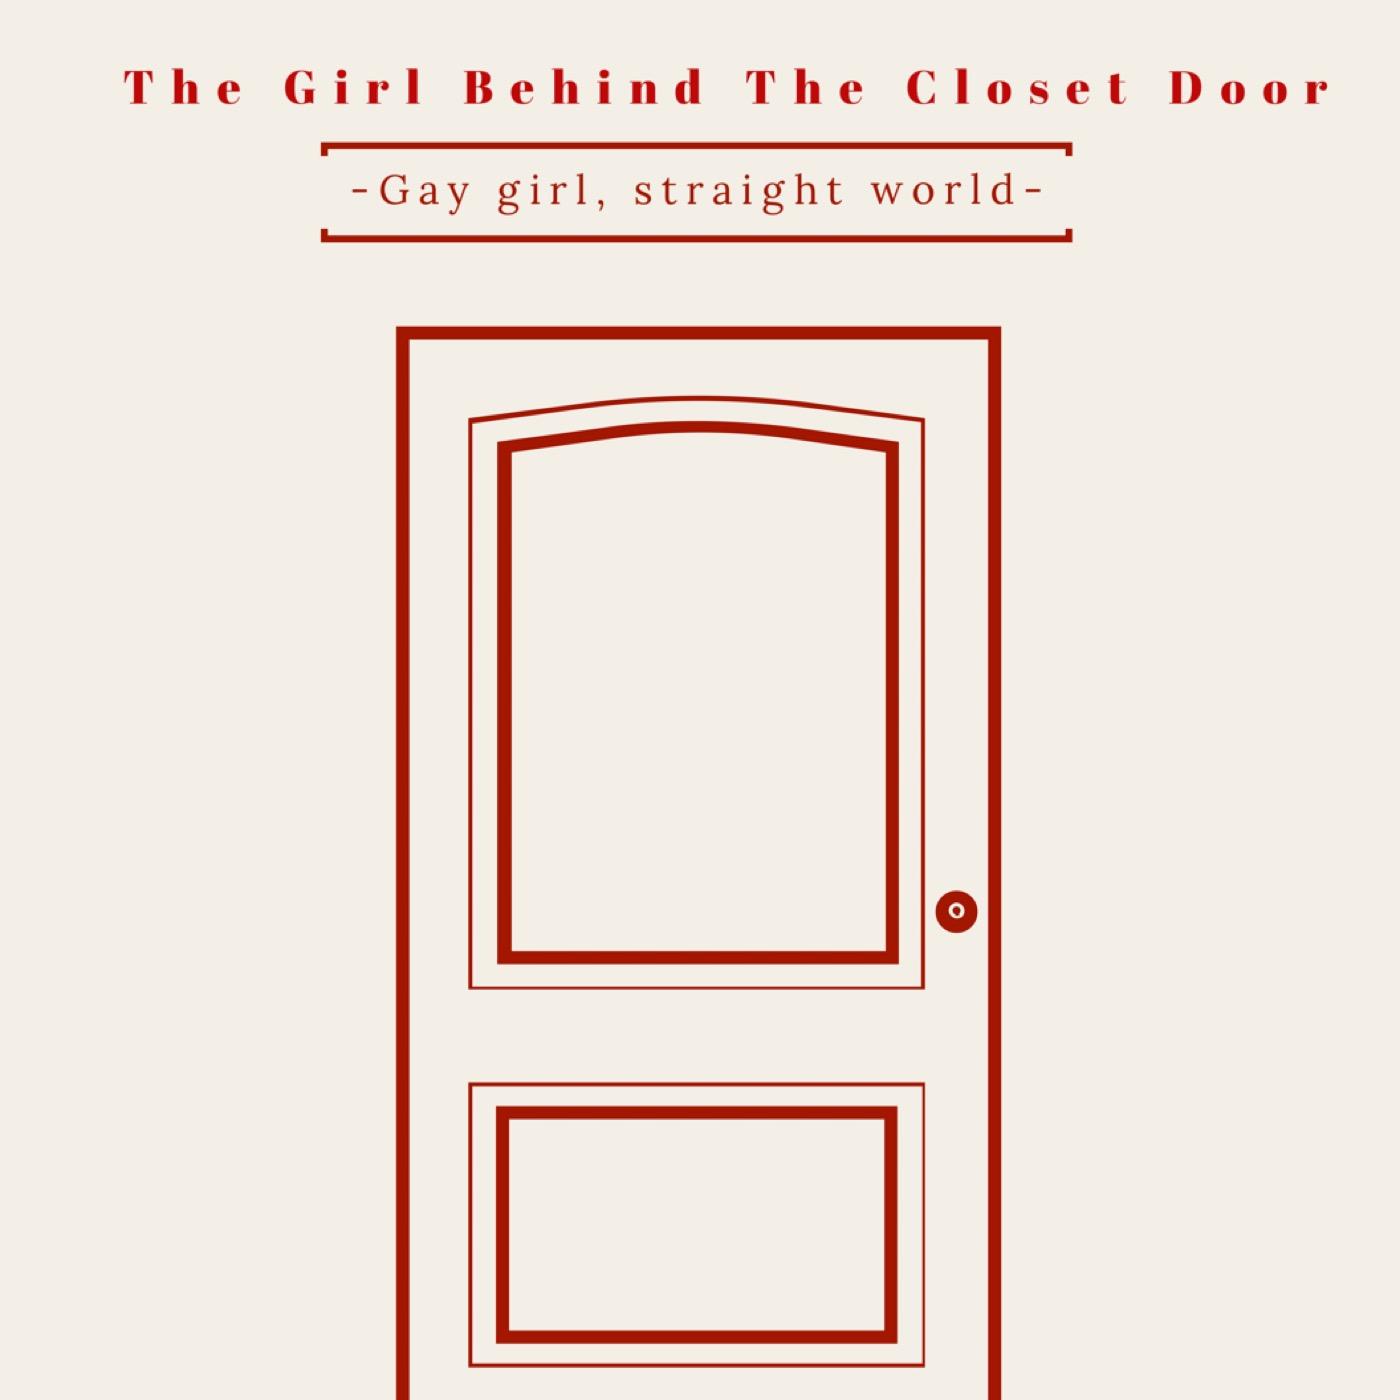 The Girl Behind The Closet Door